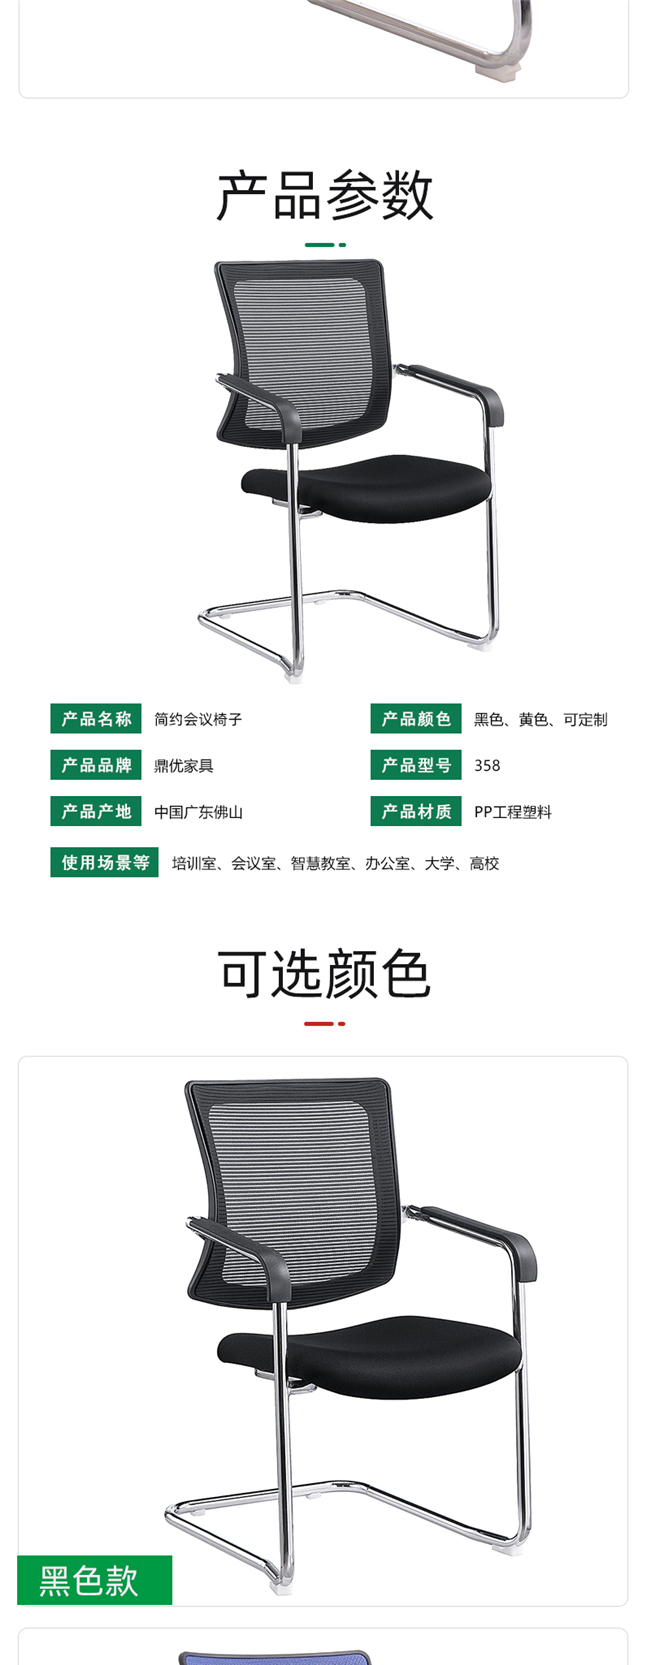 广东会议椅品牌,广东会议椅厂家